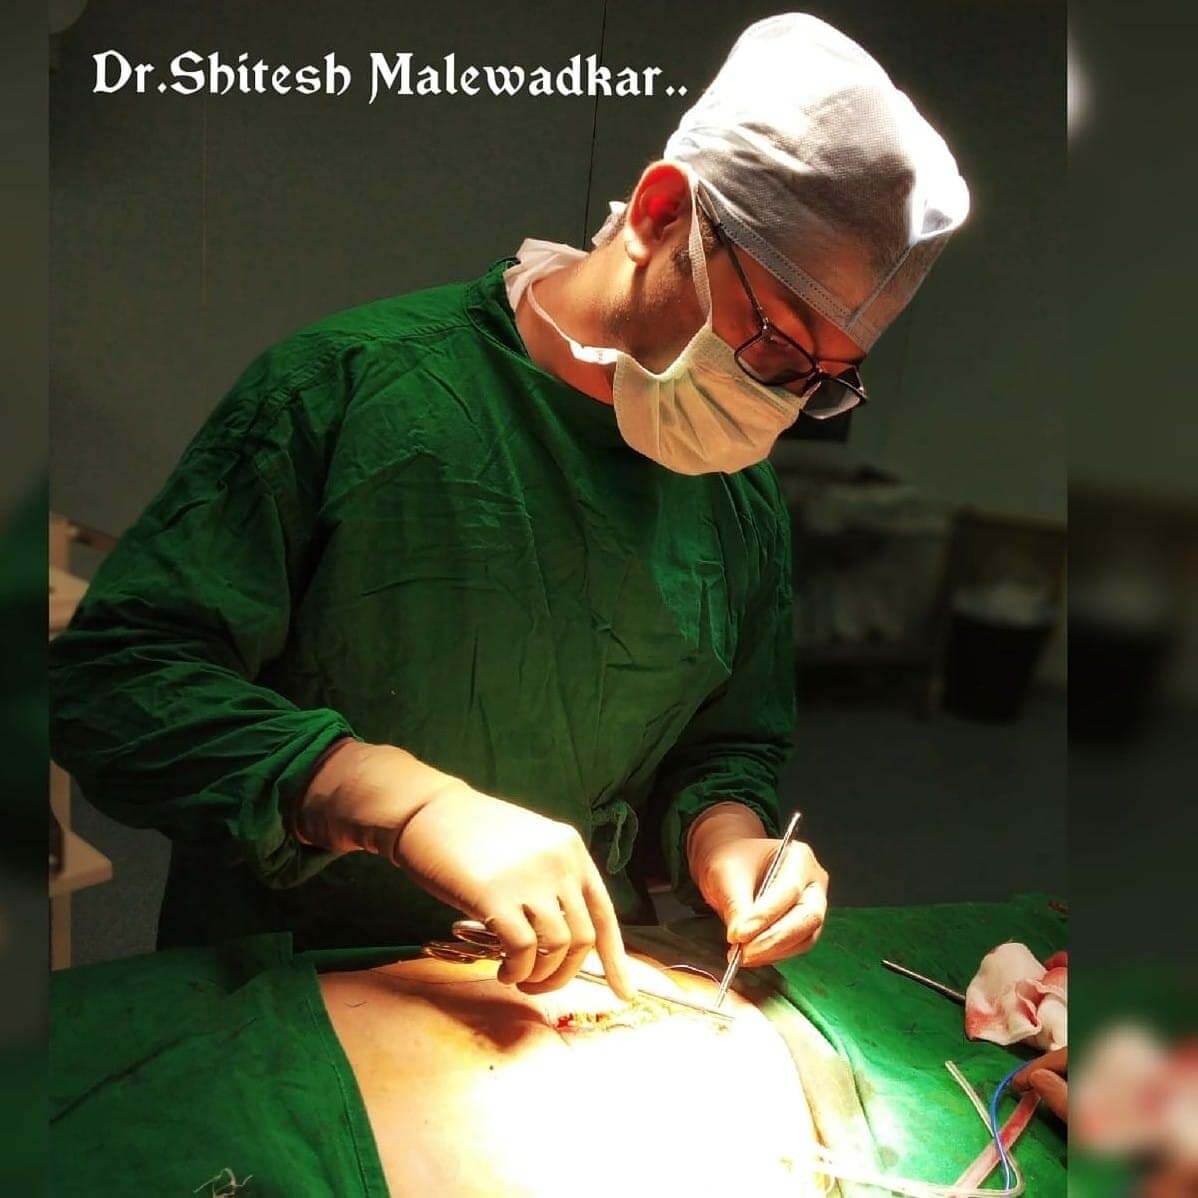 general and gi laproscopic surgeon in mumbai - dr shitesh malewadkar , hepatobiliary pancreatic surgeon in mumbai